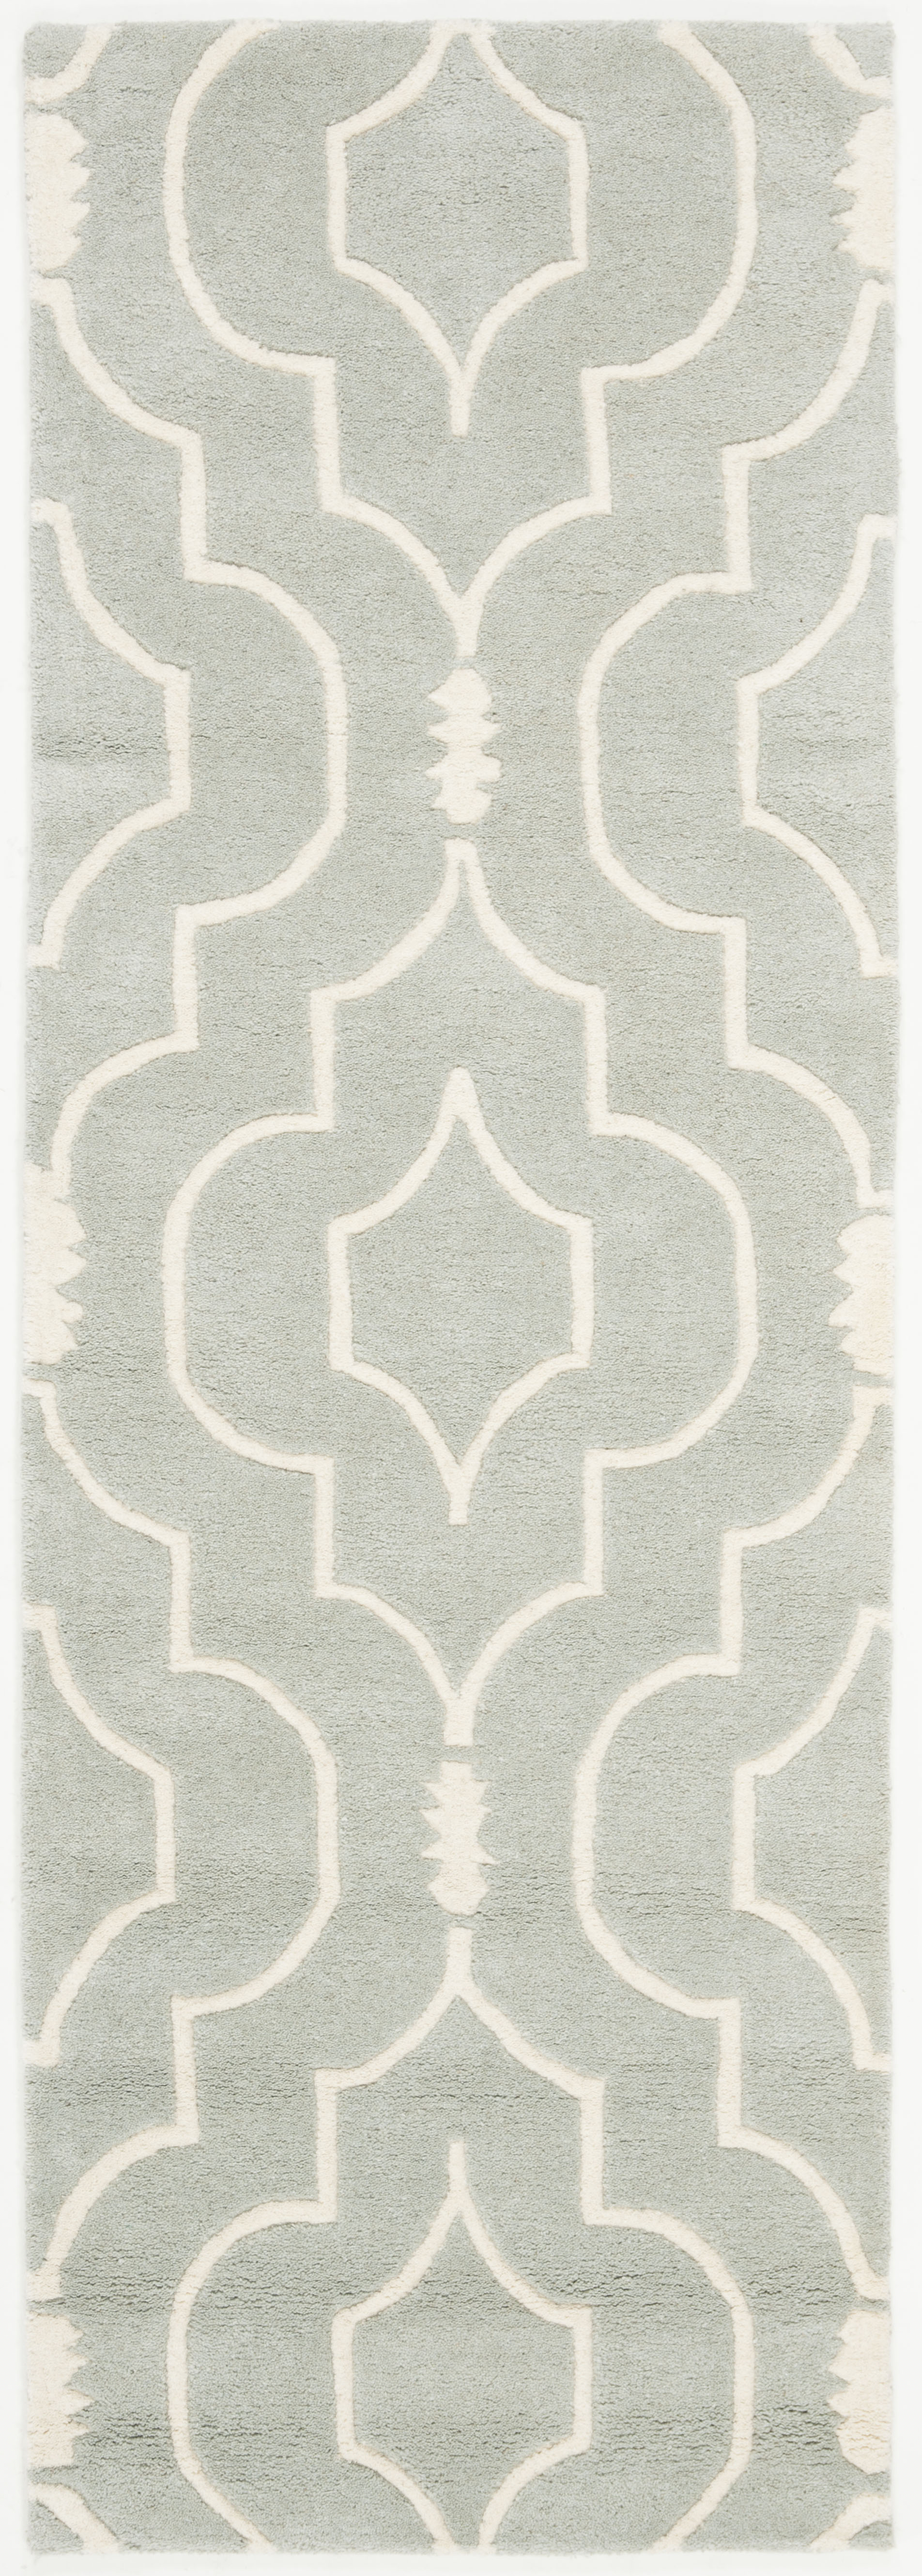 Tapis de salon interieur en gris & ivoire, 69 x 213 cm